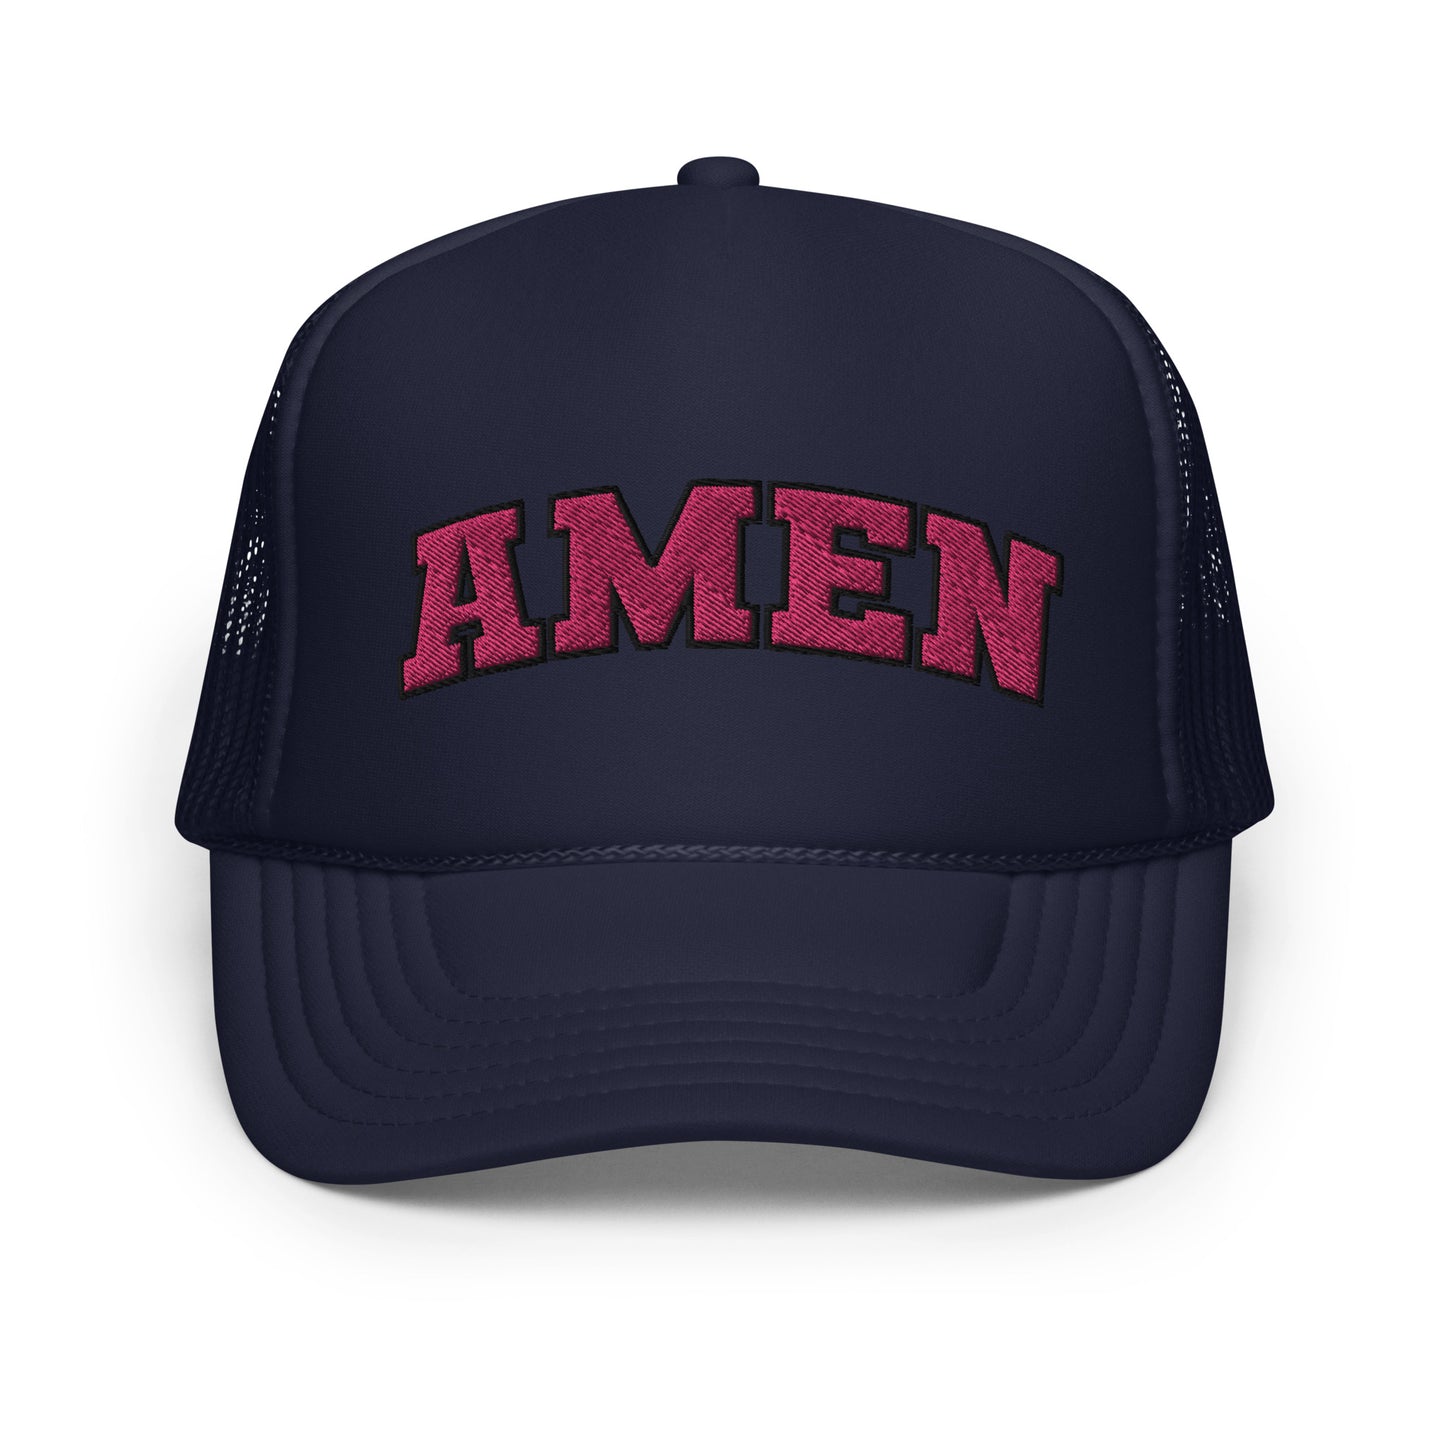 Amen Trucker Hat